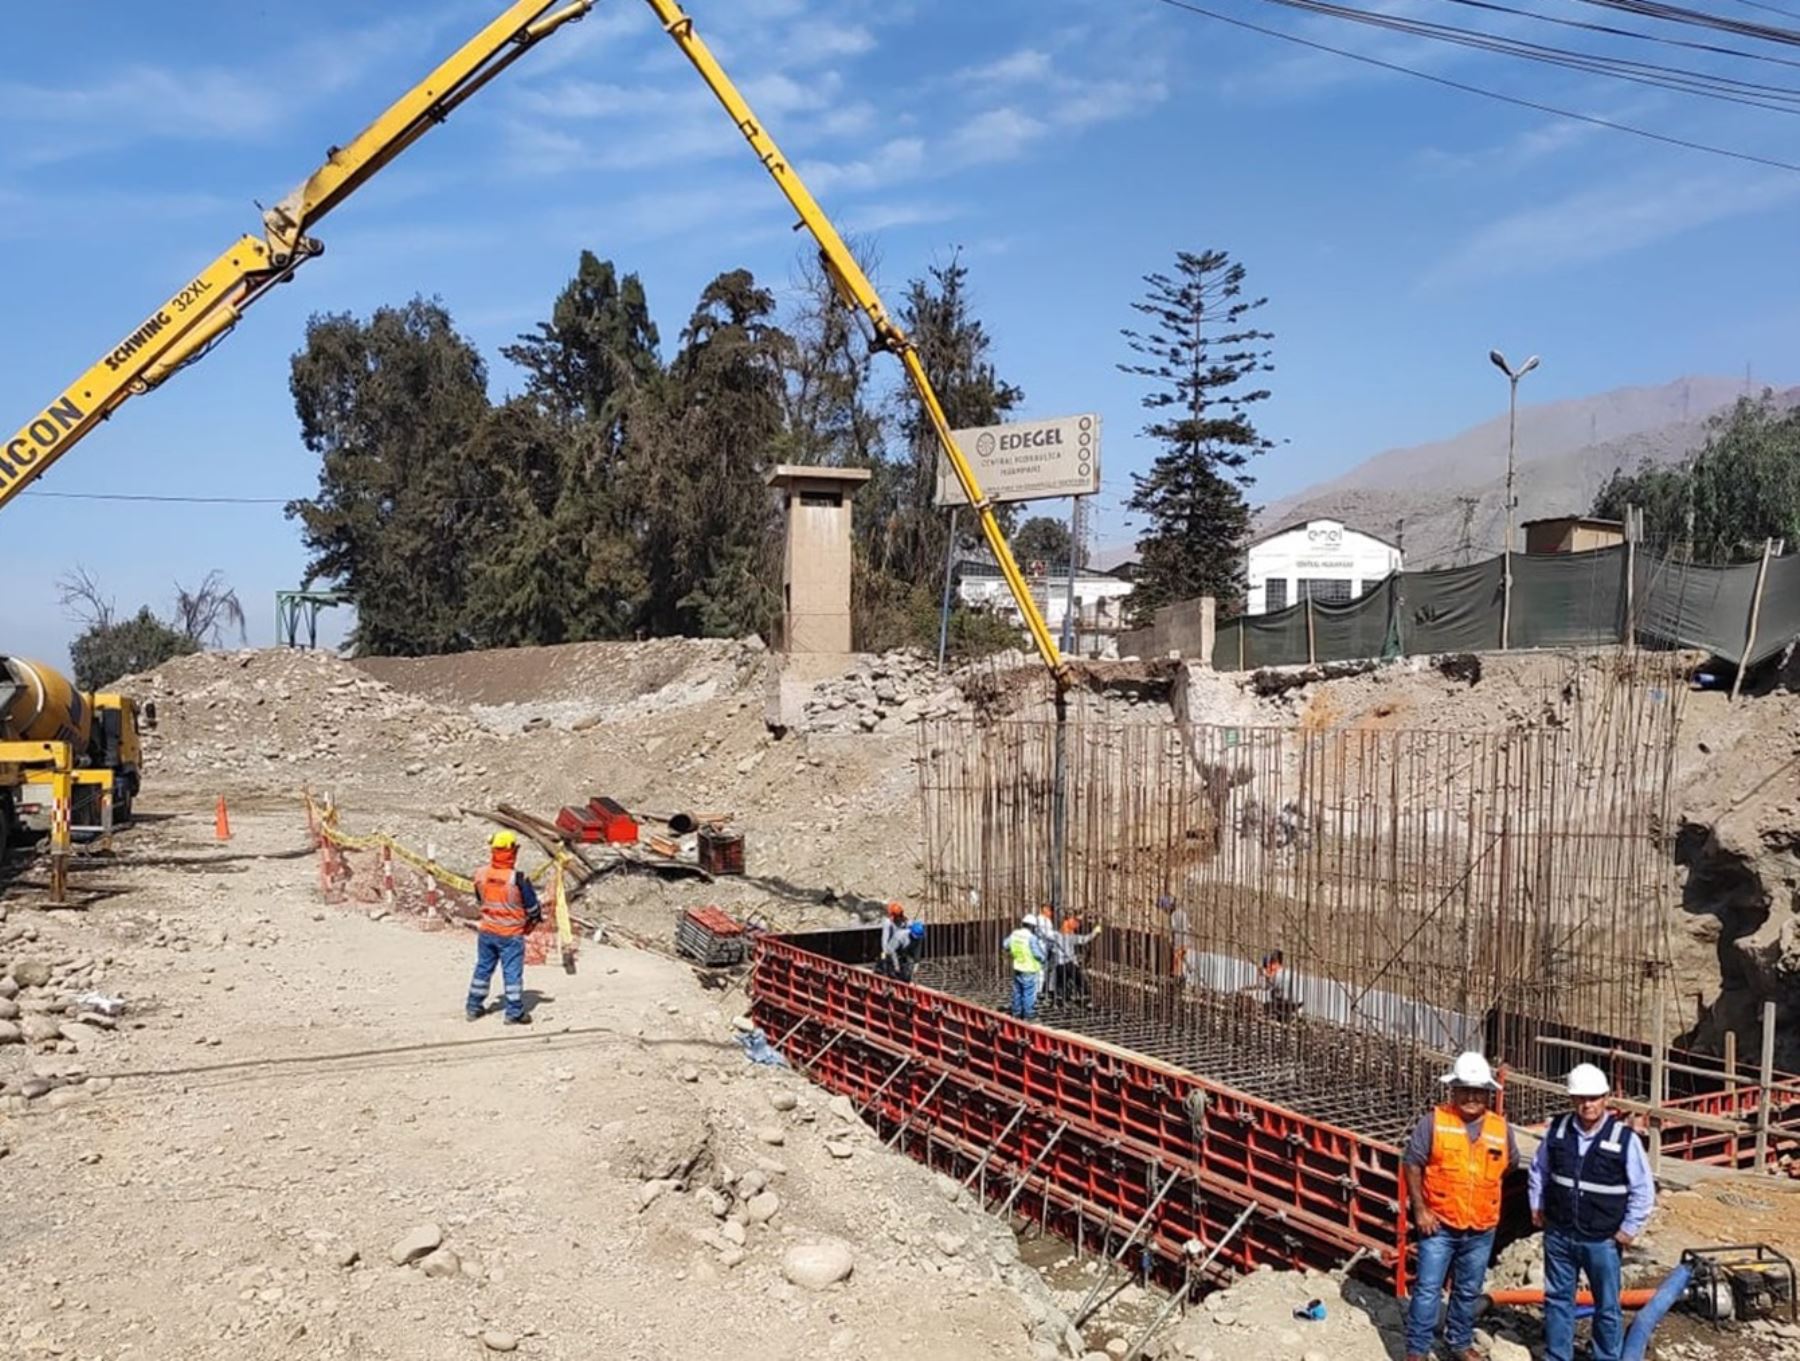 El MTC destacó el avance de los trabajos de reconstrucción de puente Verde, ubicado en el anexo de Huinco, provincia de Huarochirí. Foto: ANDINA/difusión.